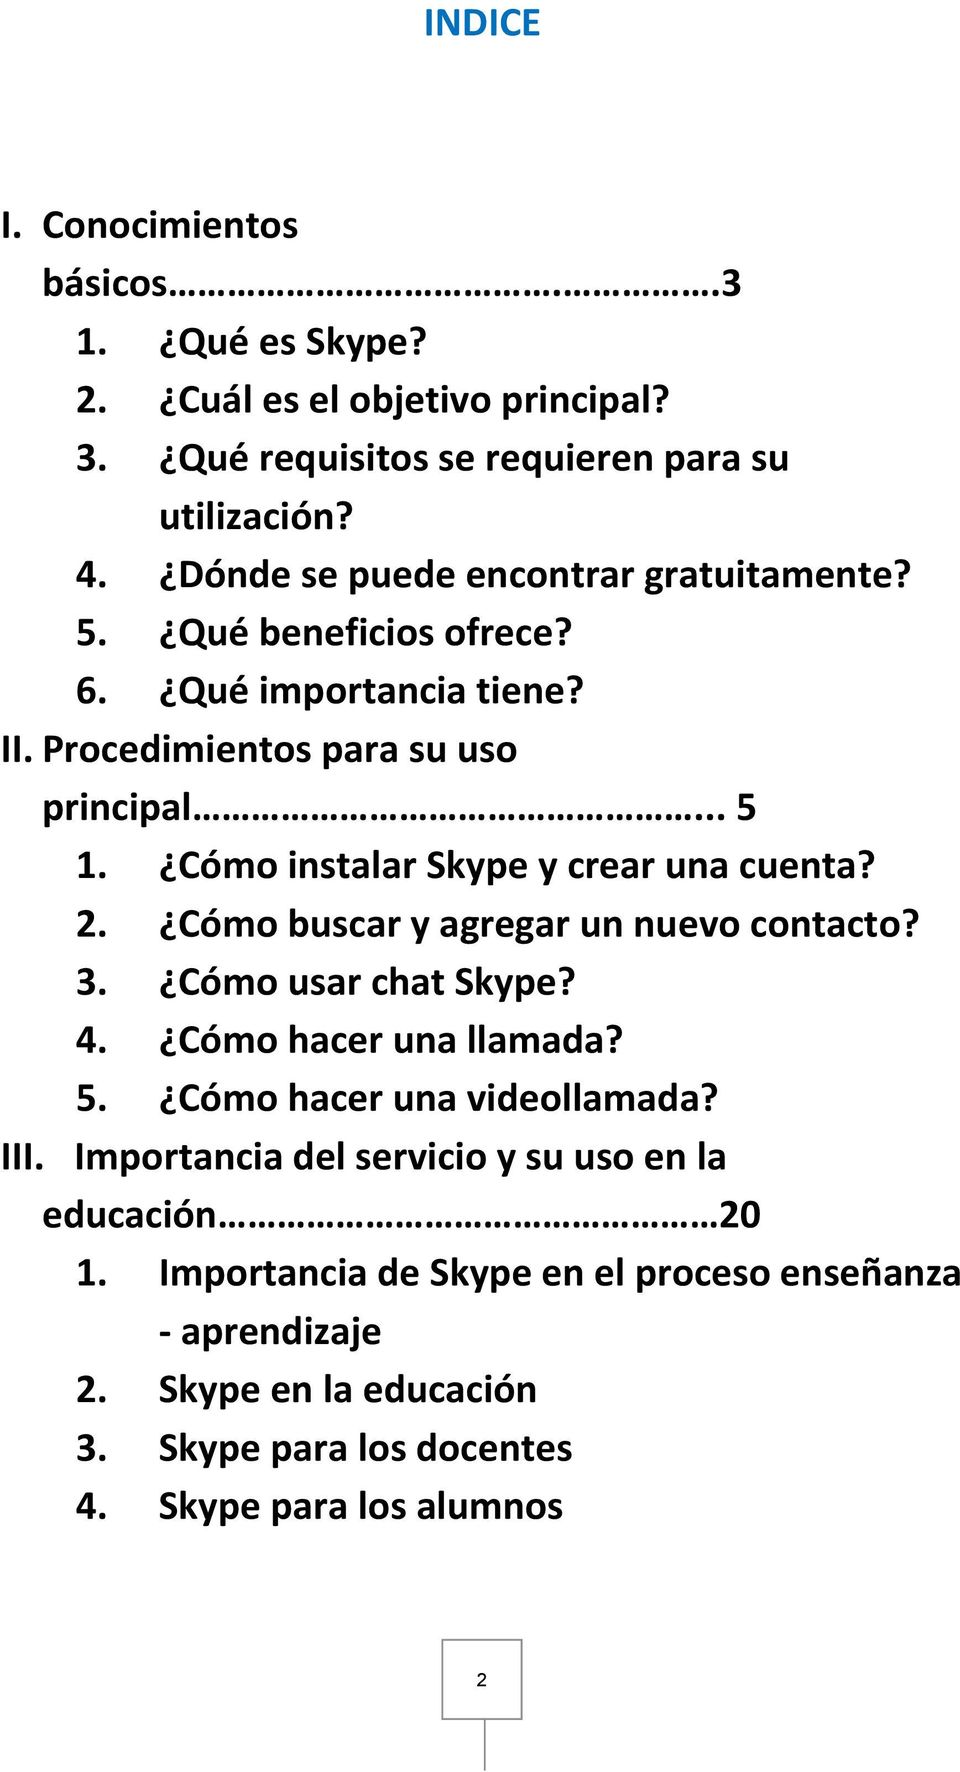 Cómo instalar Skype y crear una cuenta? 2. Cómo buscar y agregar un nuevo contacto? 3. Cómo usar chat Skype? 4. Cómo hacer una llamada? 5.